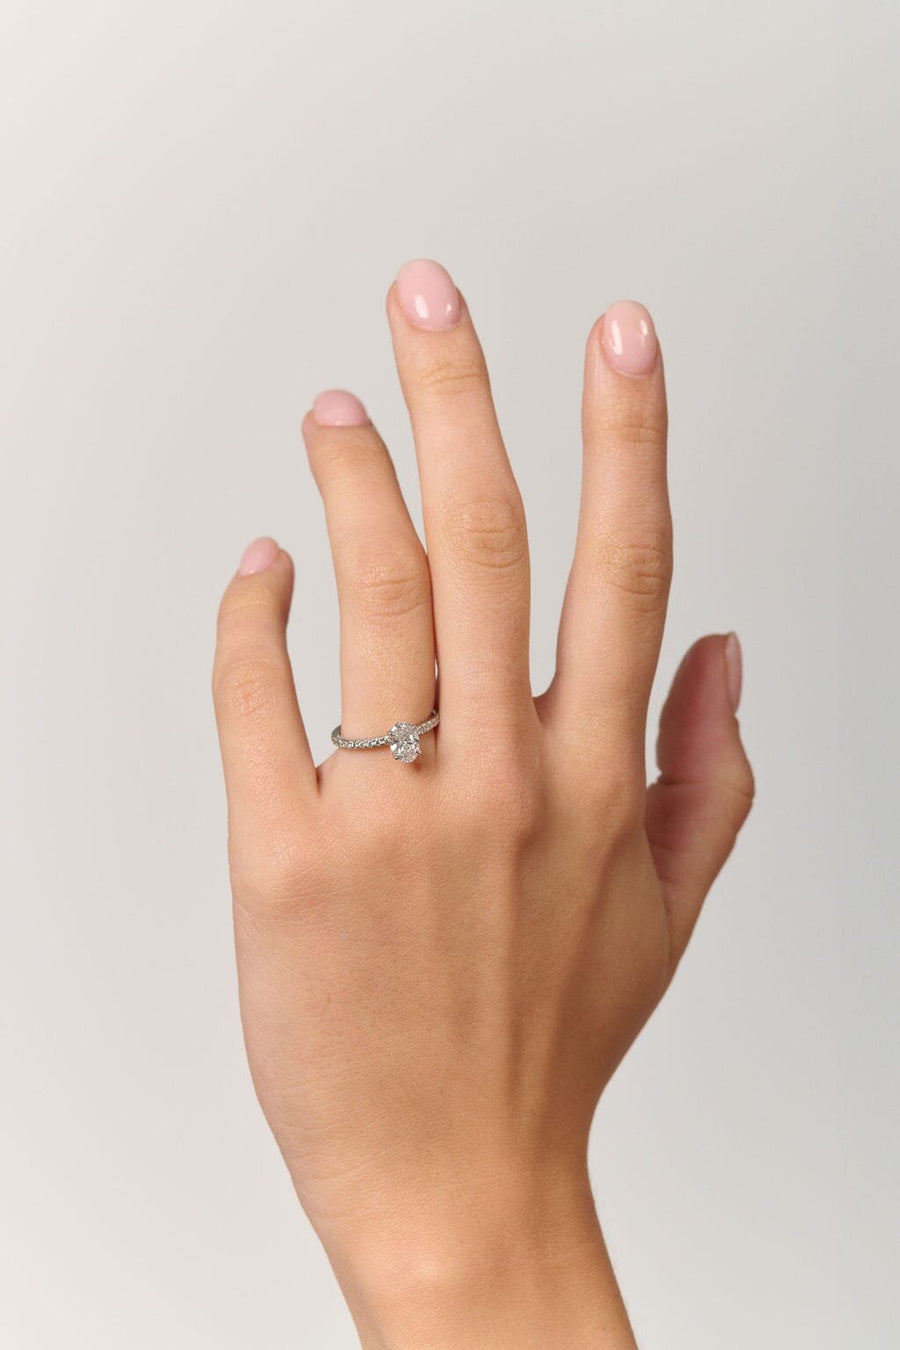 Lena Diamond Ring - 18K White Gold - Eliise Maar Jewellery